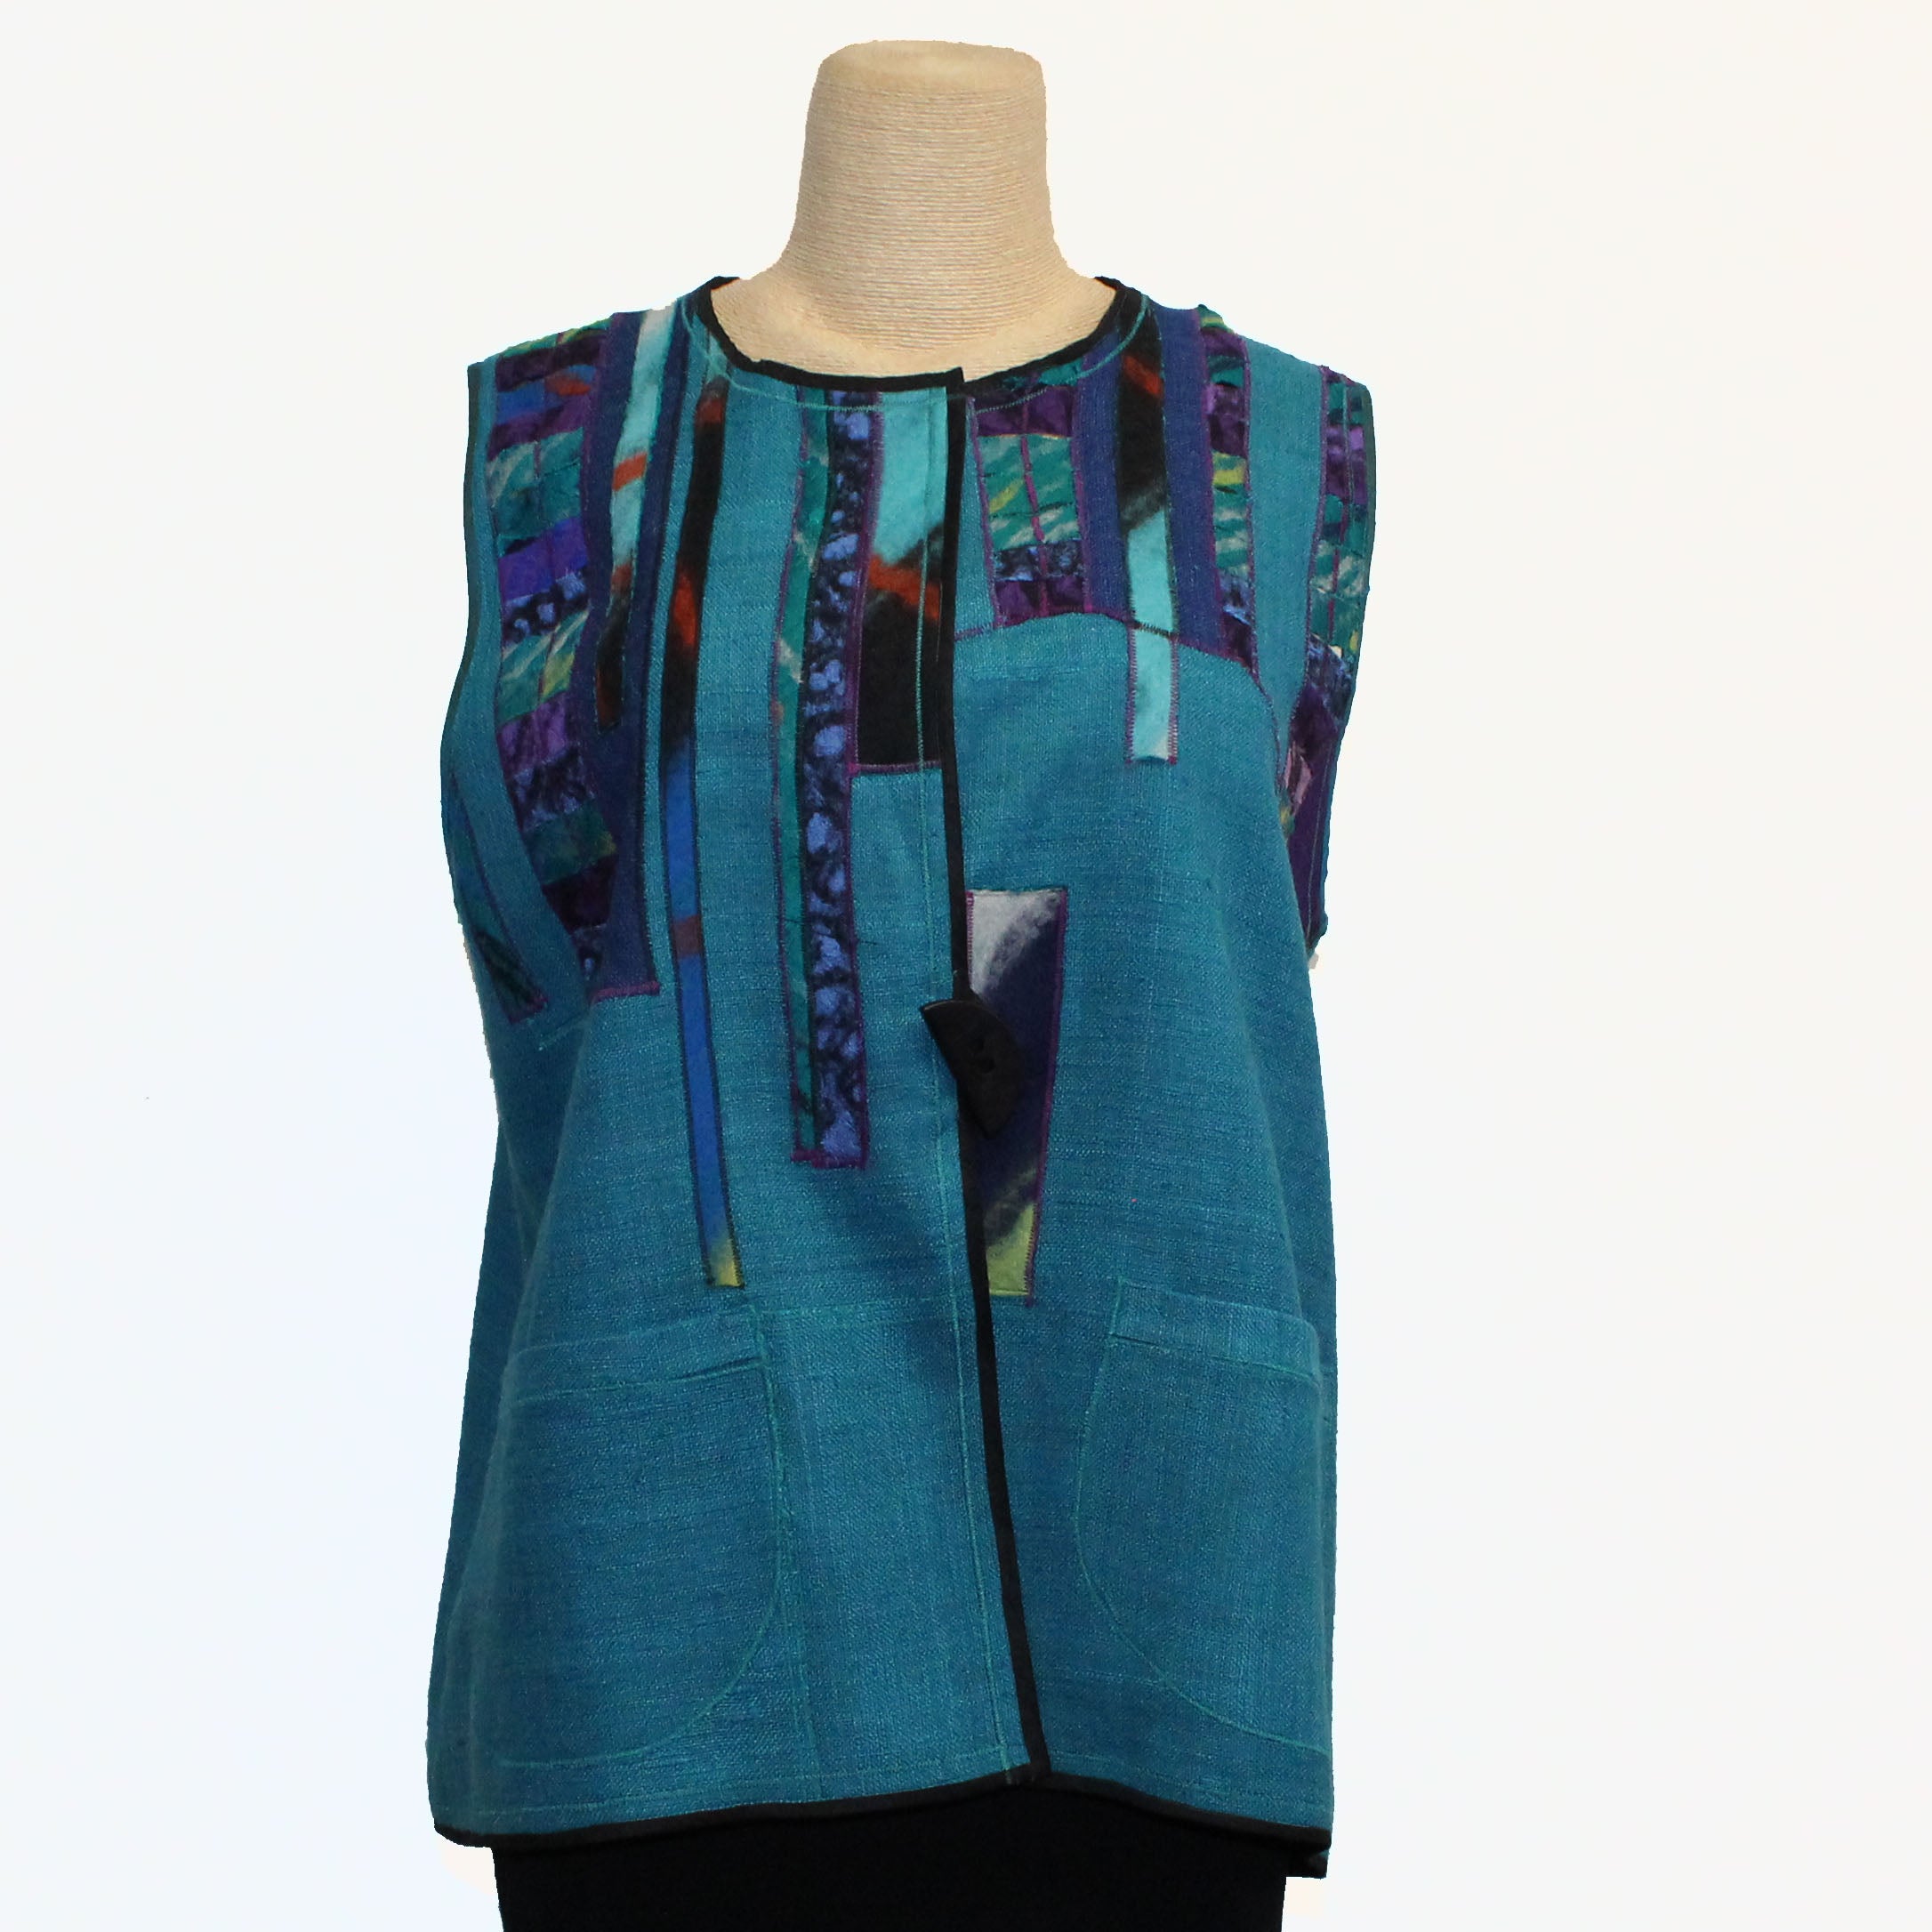 Maggy Pavlou Vest, Turquoise/Multi-Color, S